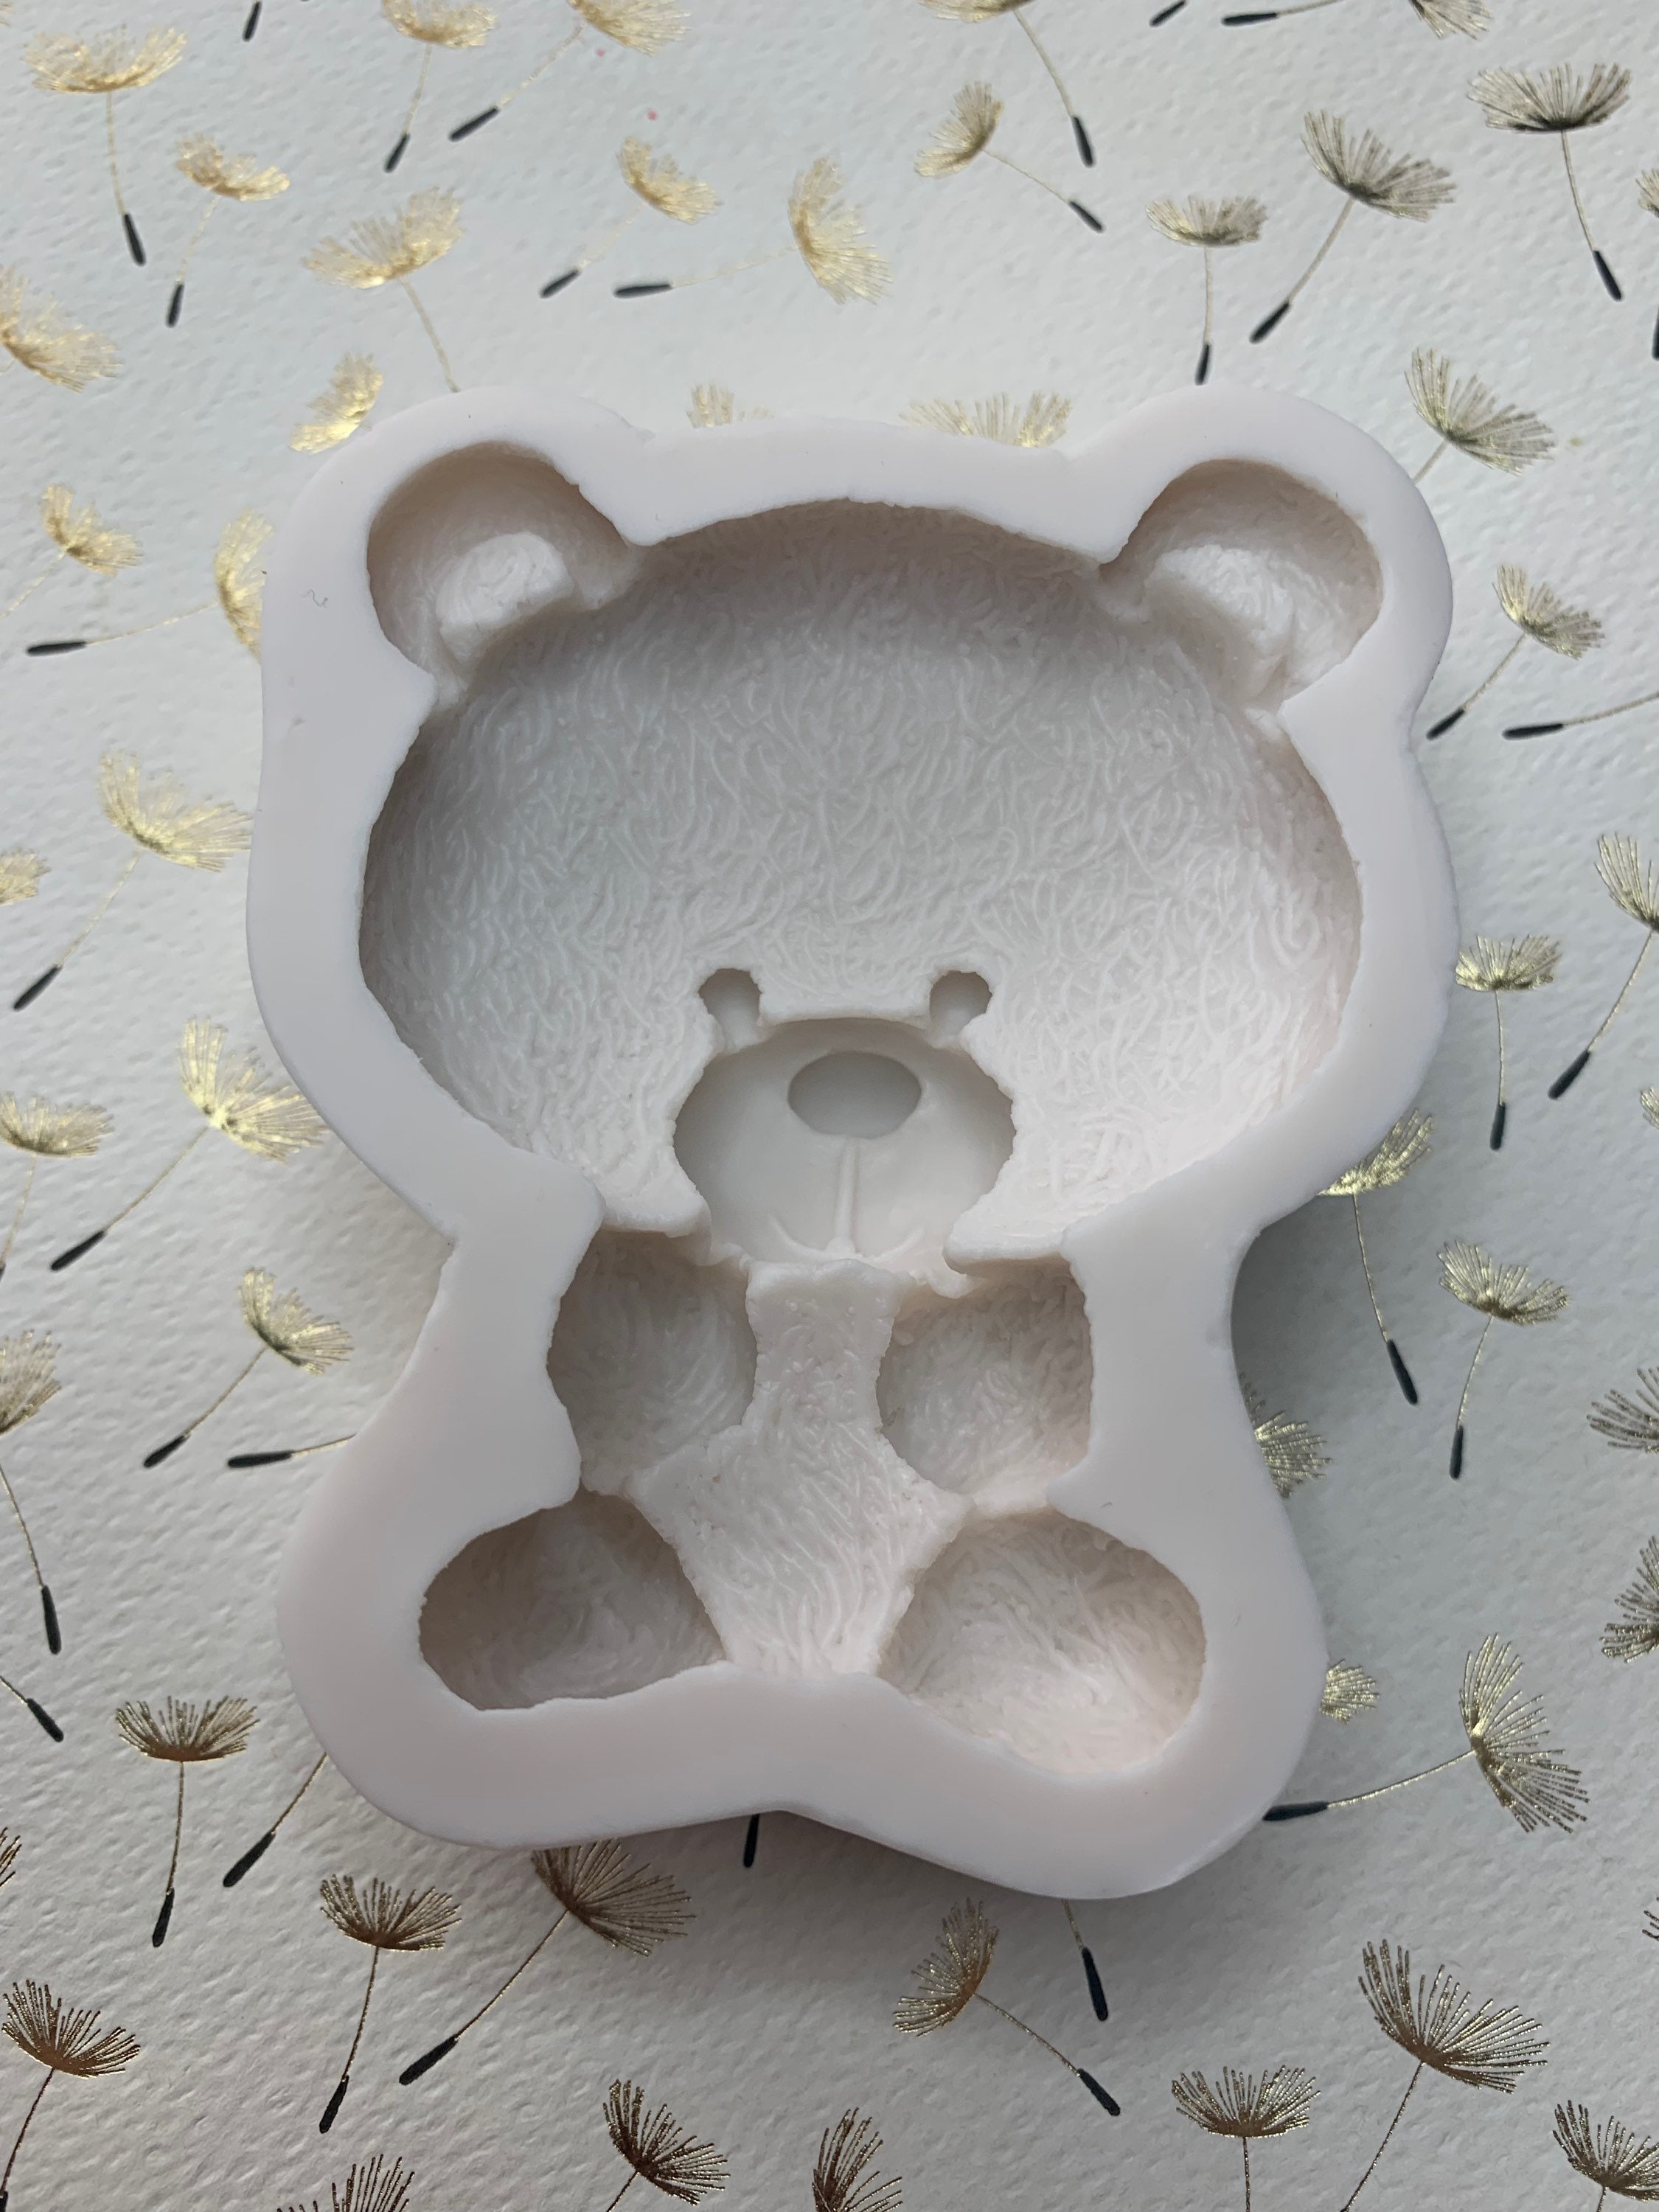 Teddy Bear Boy Silicone Fondant Mold Teddy Bear Mold Silicone Soap